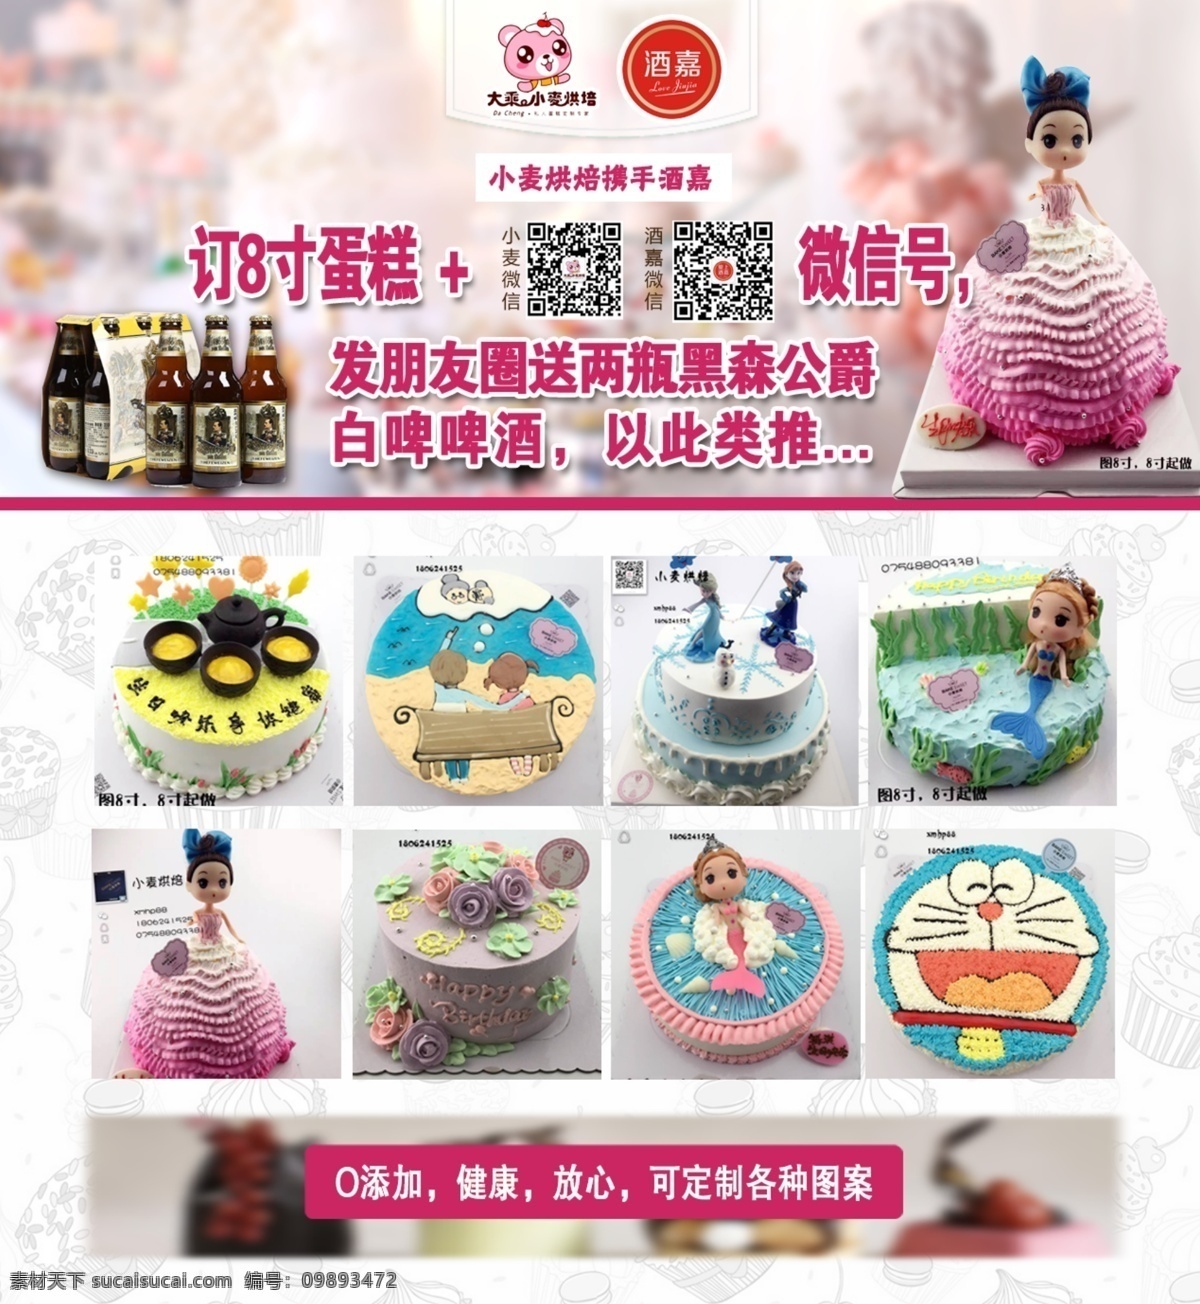 蛋糕 烘焙 海报 宣传单 dm 哆啦a梦 芭比娃娃 翻糖 甜品 生日 啤酒 活动 定制 裱花 花朵 白色